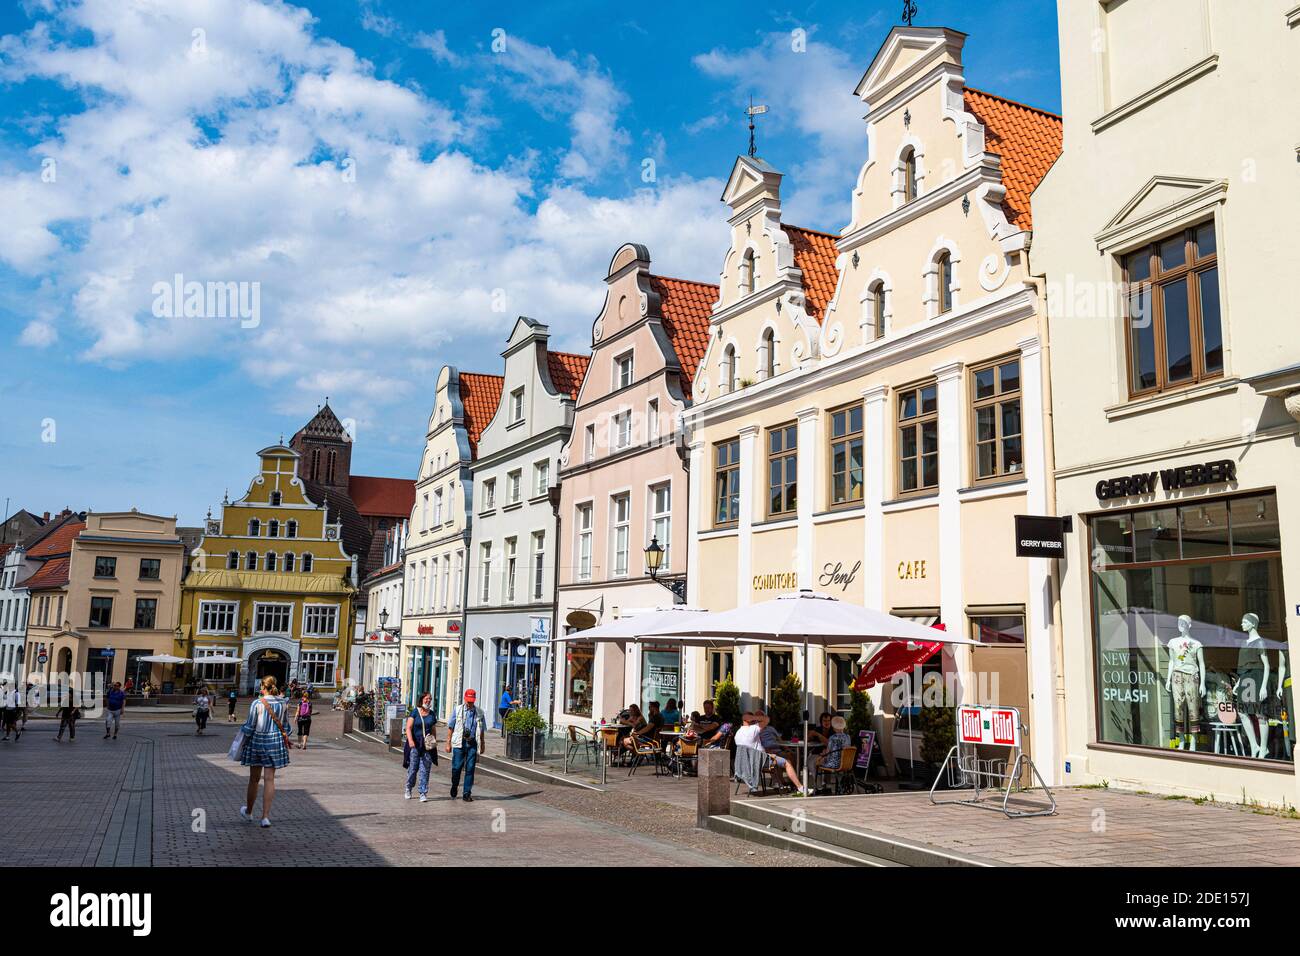 Case anseatiche, città anseatica di Wismar, patrimonio dell'umanità dell'UNESCO, Meclemburgo-Vorpommern, Germania, Europa Foto Stock